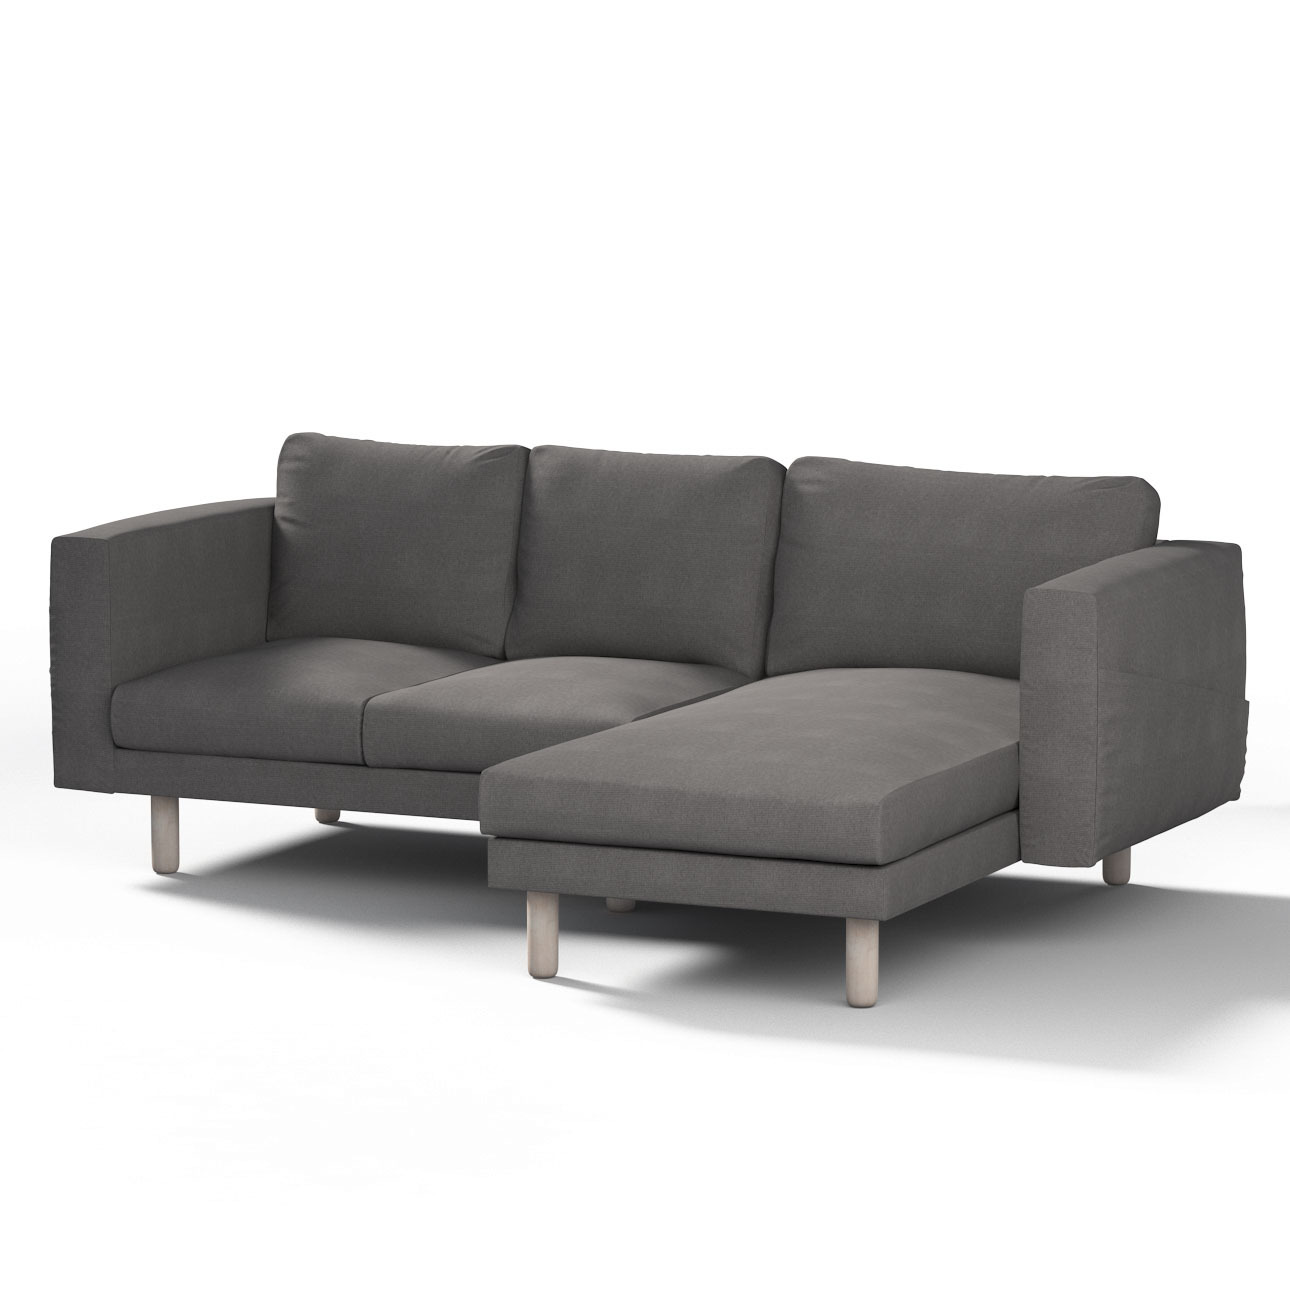 Bezug für Norsborg 3-Sitzer Sofa mit Recamiere, dunkelgrau, Norsborg Bezug günstig online kaufen